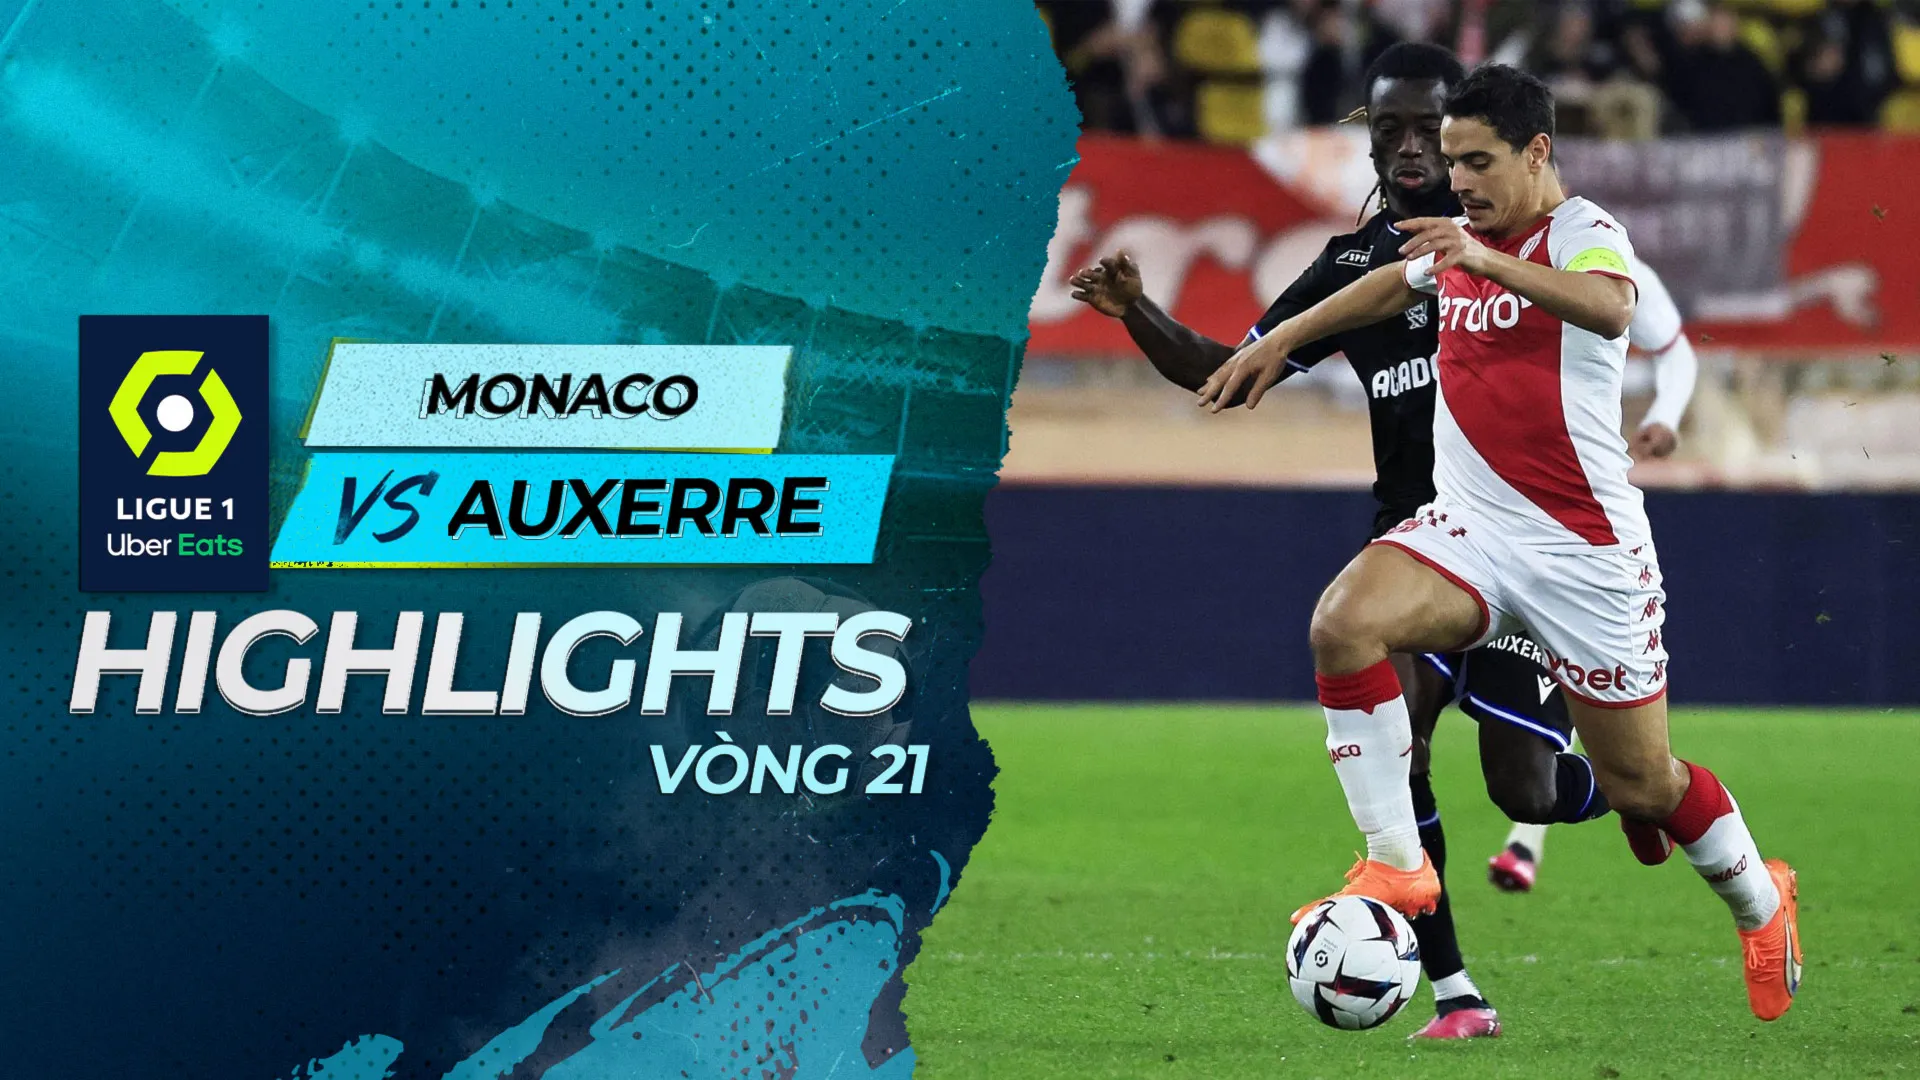 Highlights Monaco - Auxerre (Vòng 21 - Giải VĐQG Pháp 2022/23)